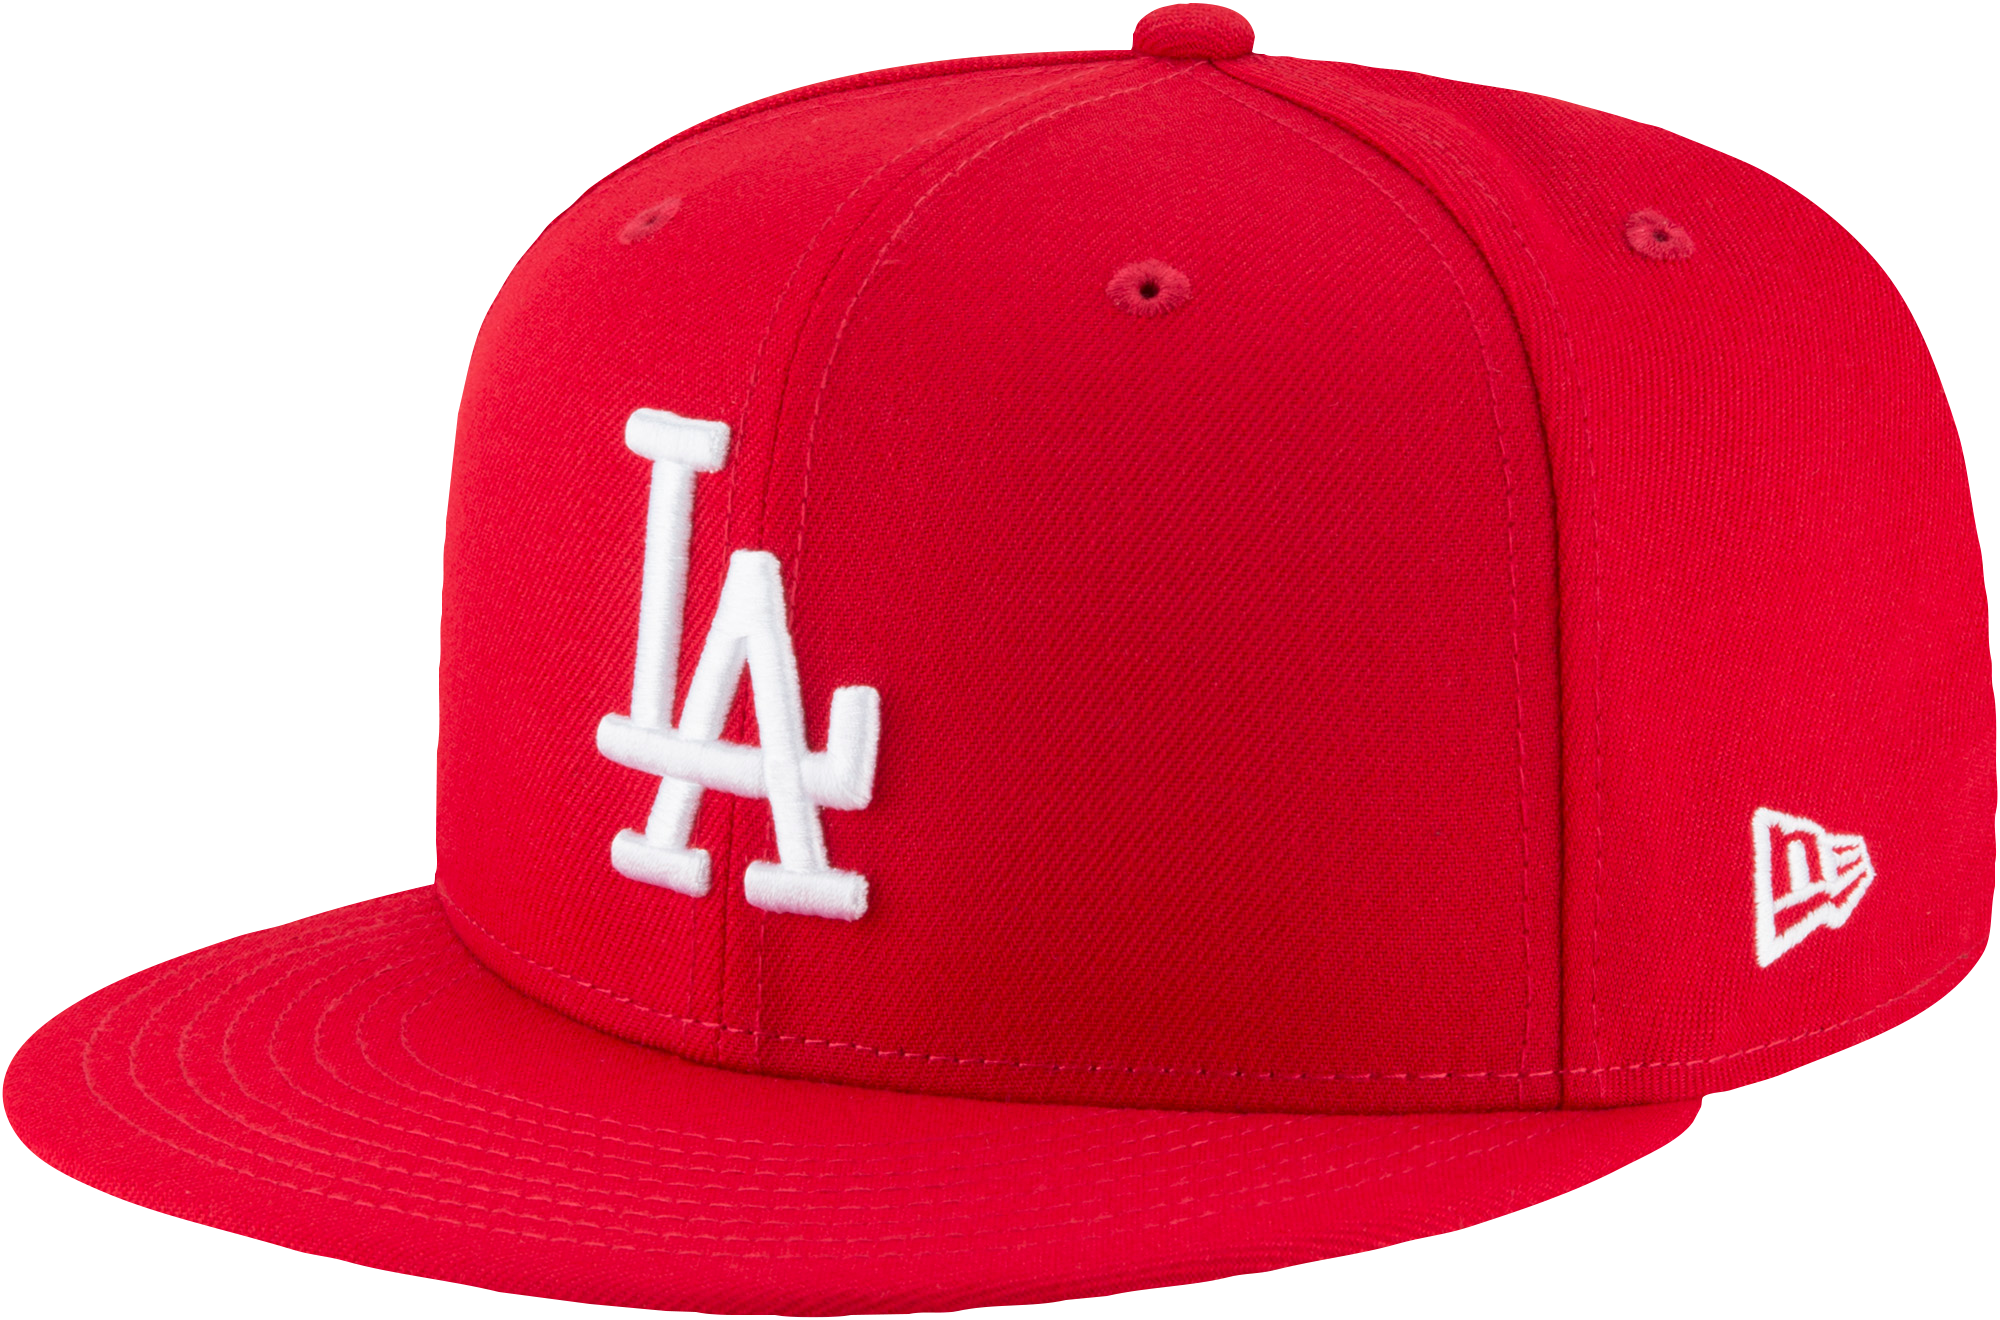 Gorra MLB Los Angeles Dodgers Historic Champs New Era 59fifty * SuperCap